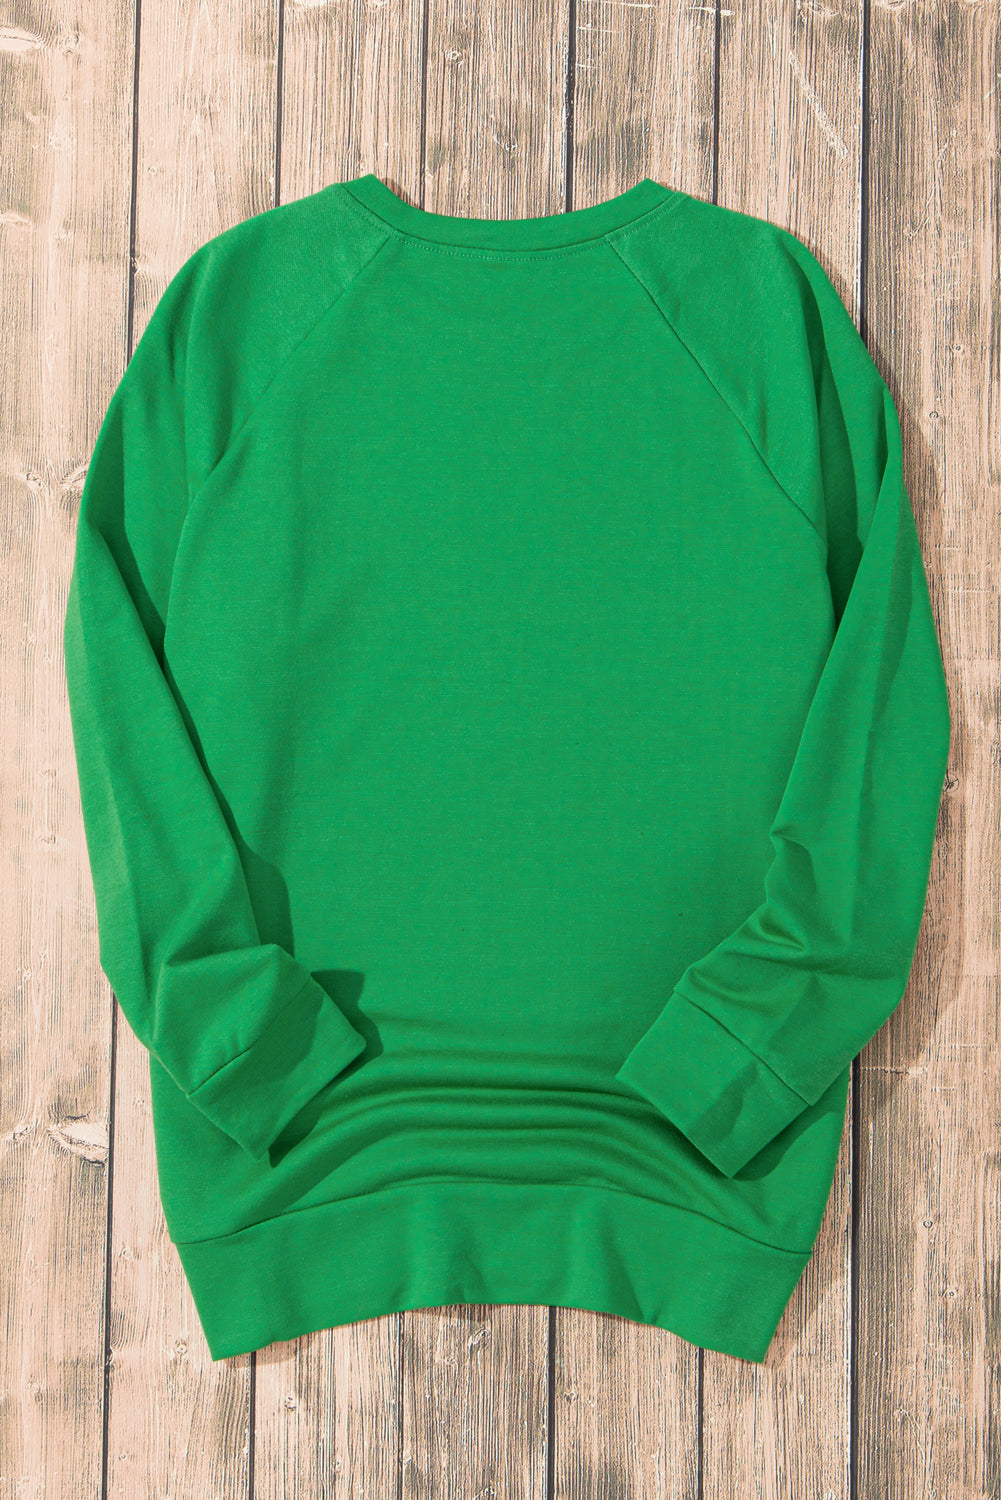 Grünes, einfarbiges Sweatshirt mit Rundhalsausschnitt und Raglanärmeln